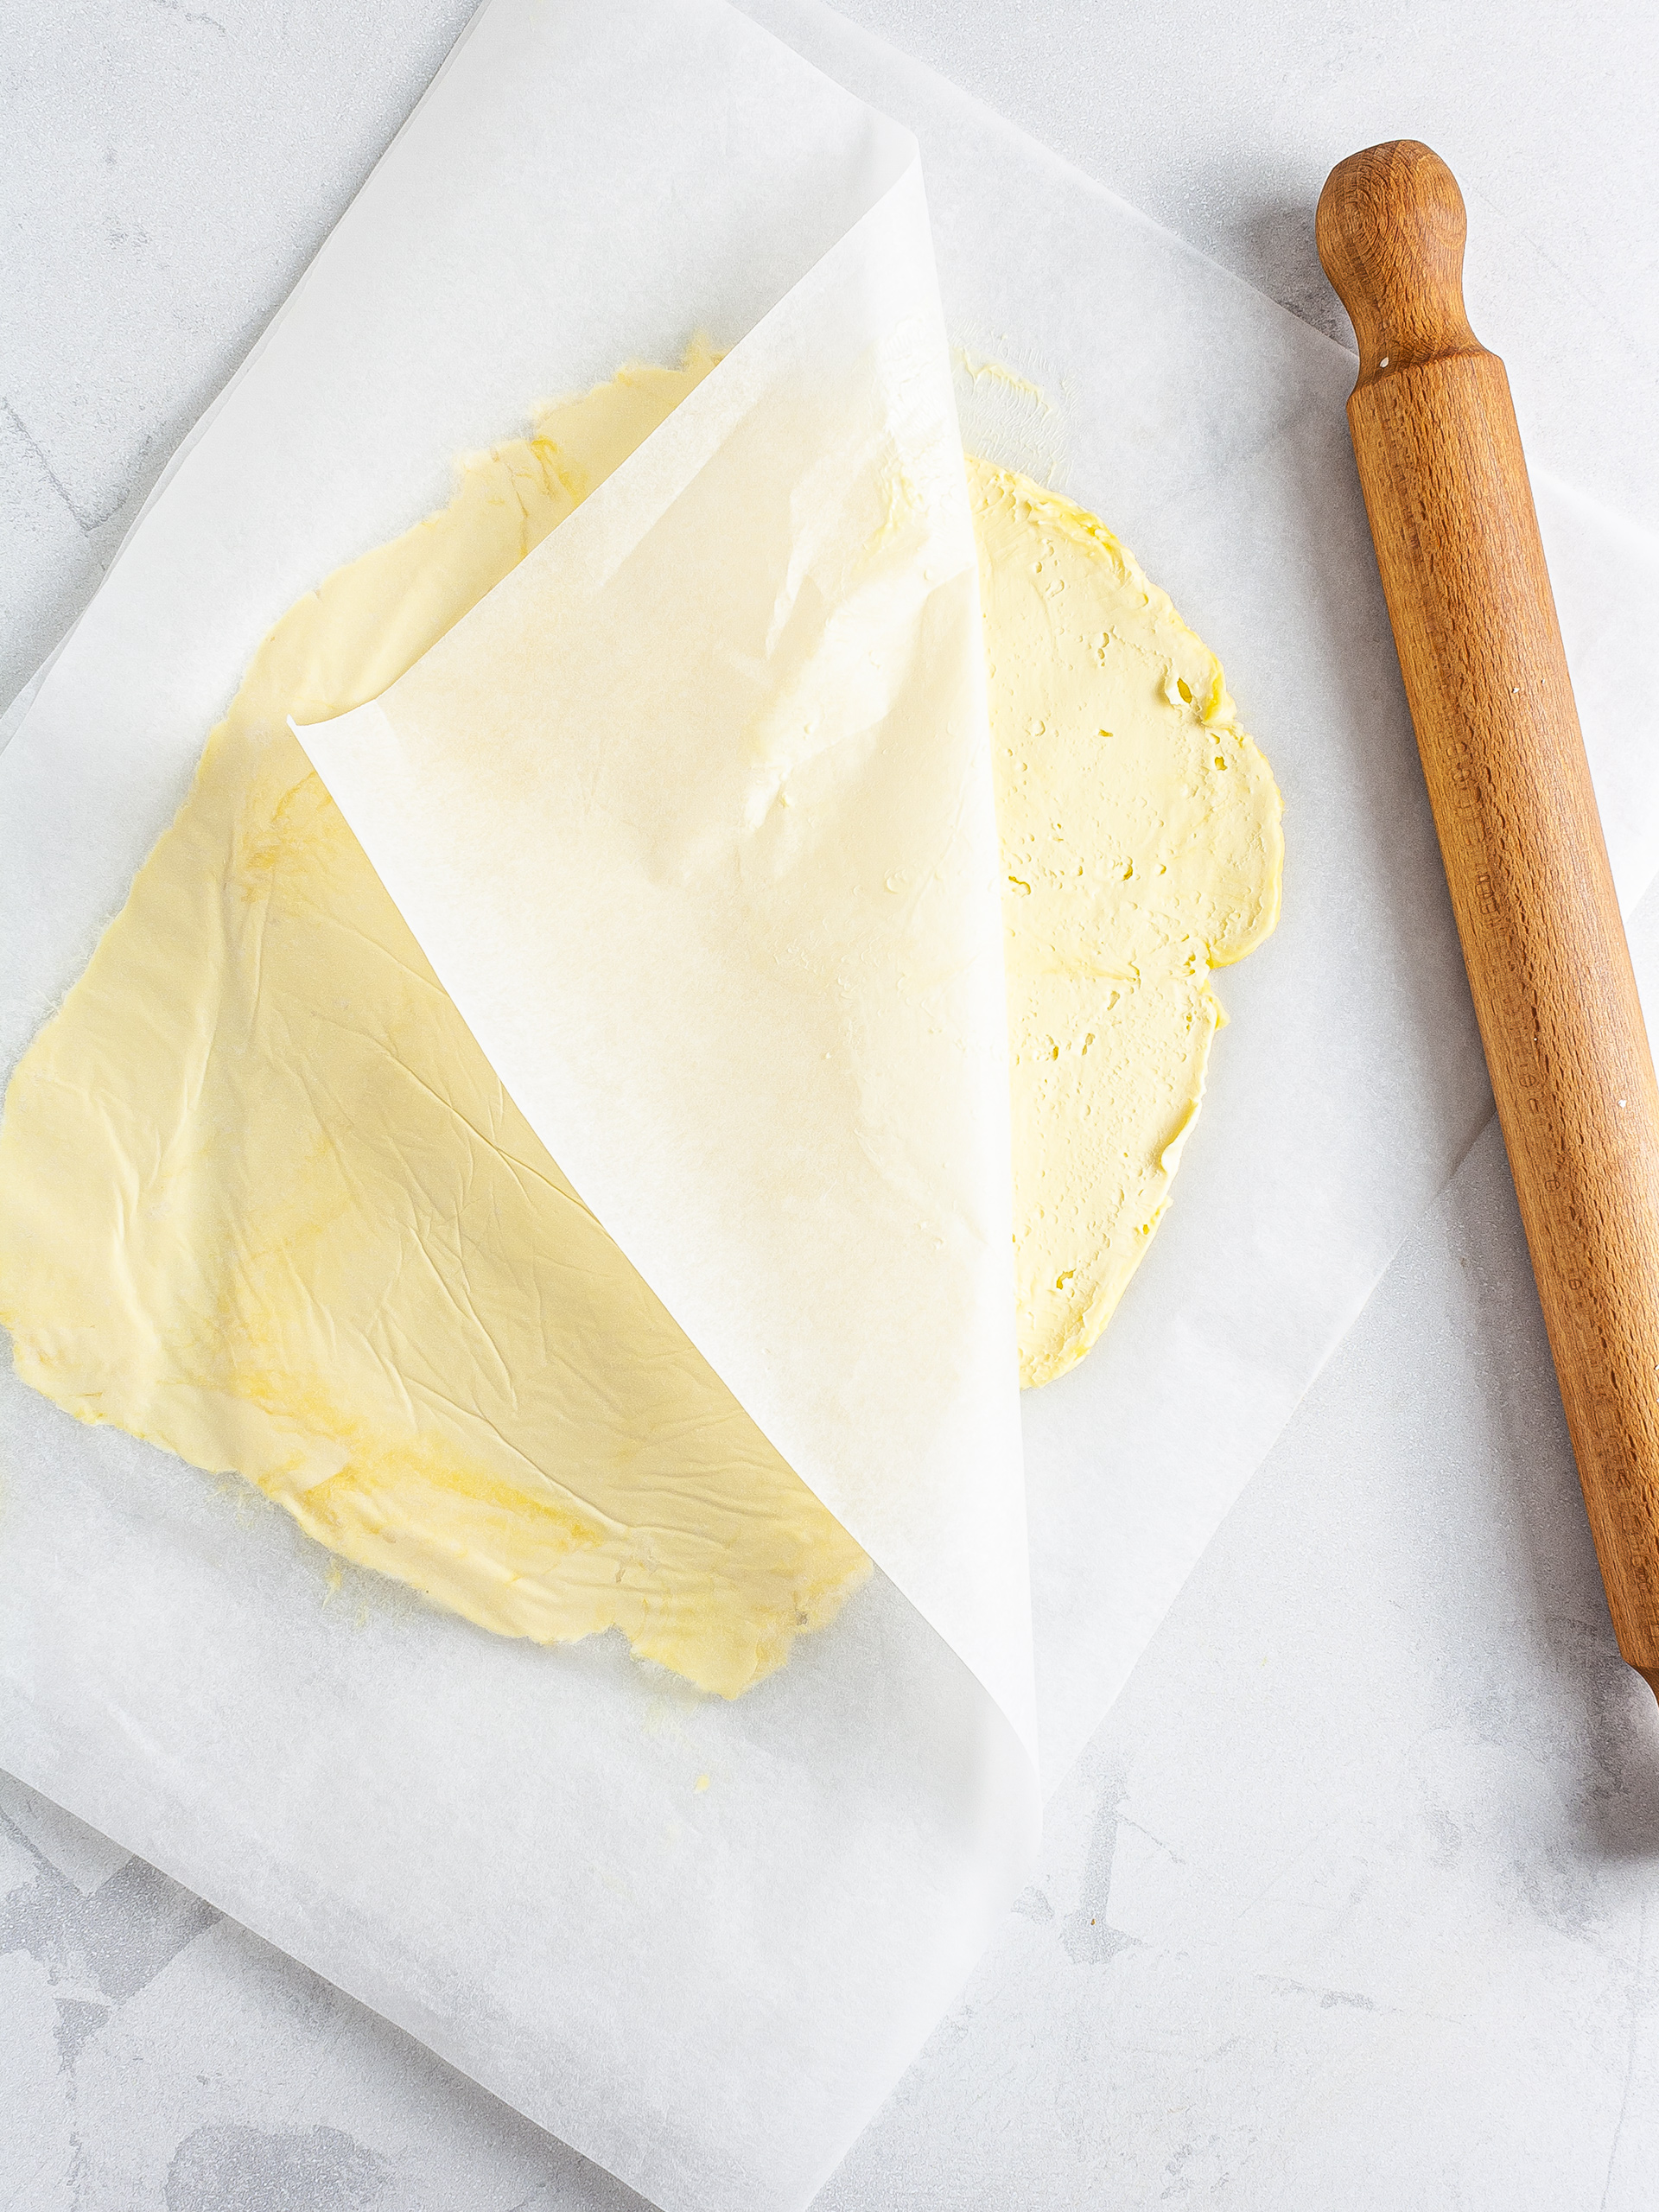 Vegan butter spread in between baking paper